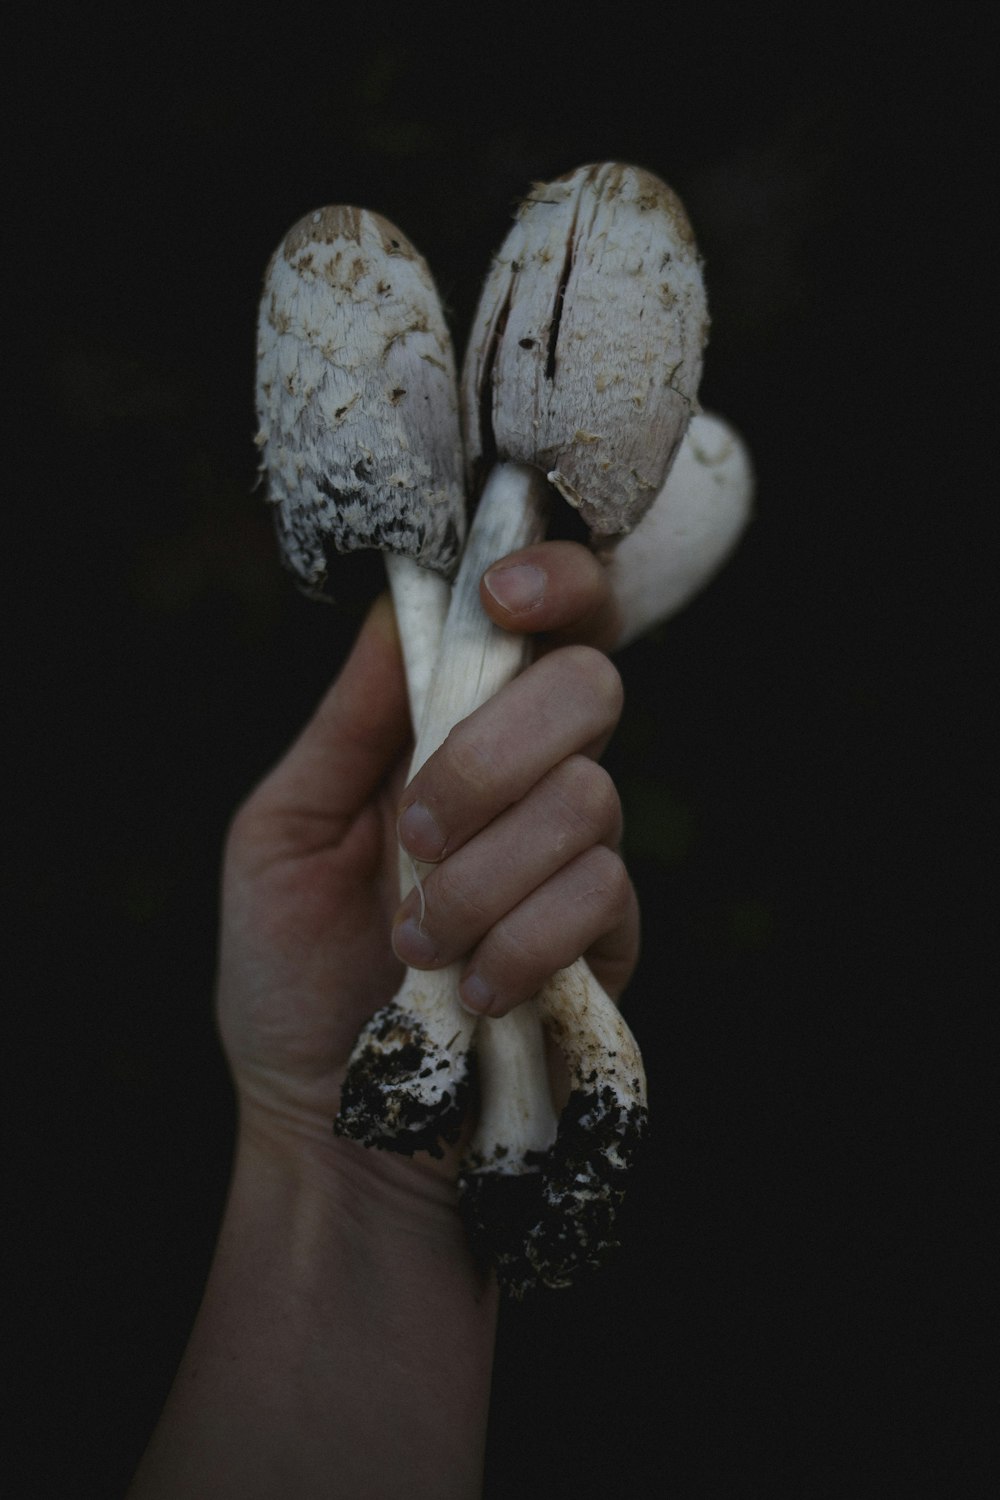 Person, die Pilz in der Hand hält